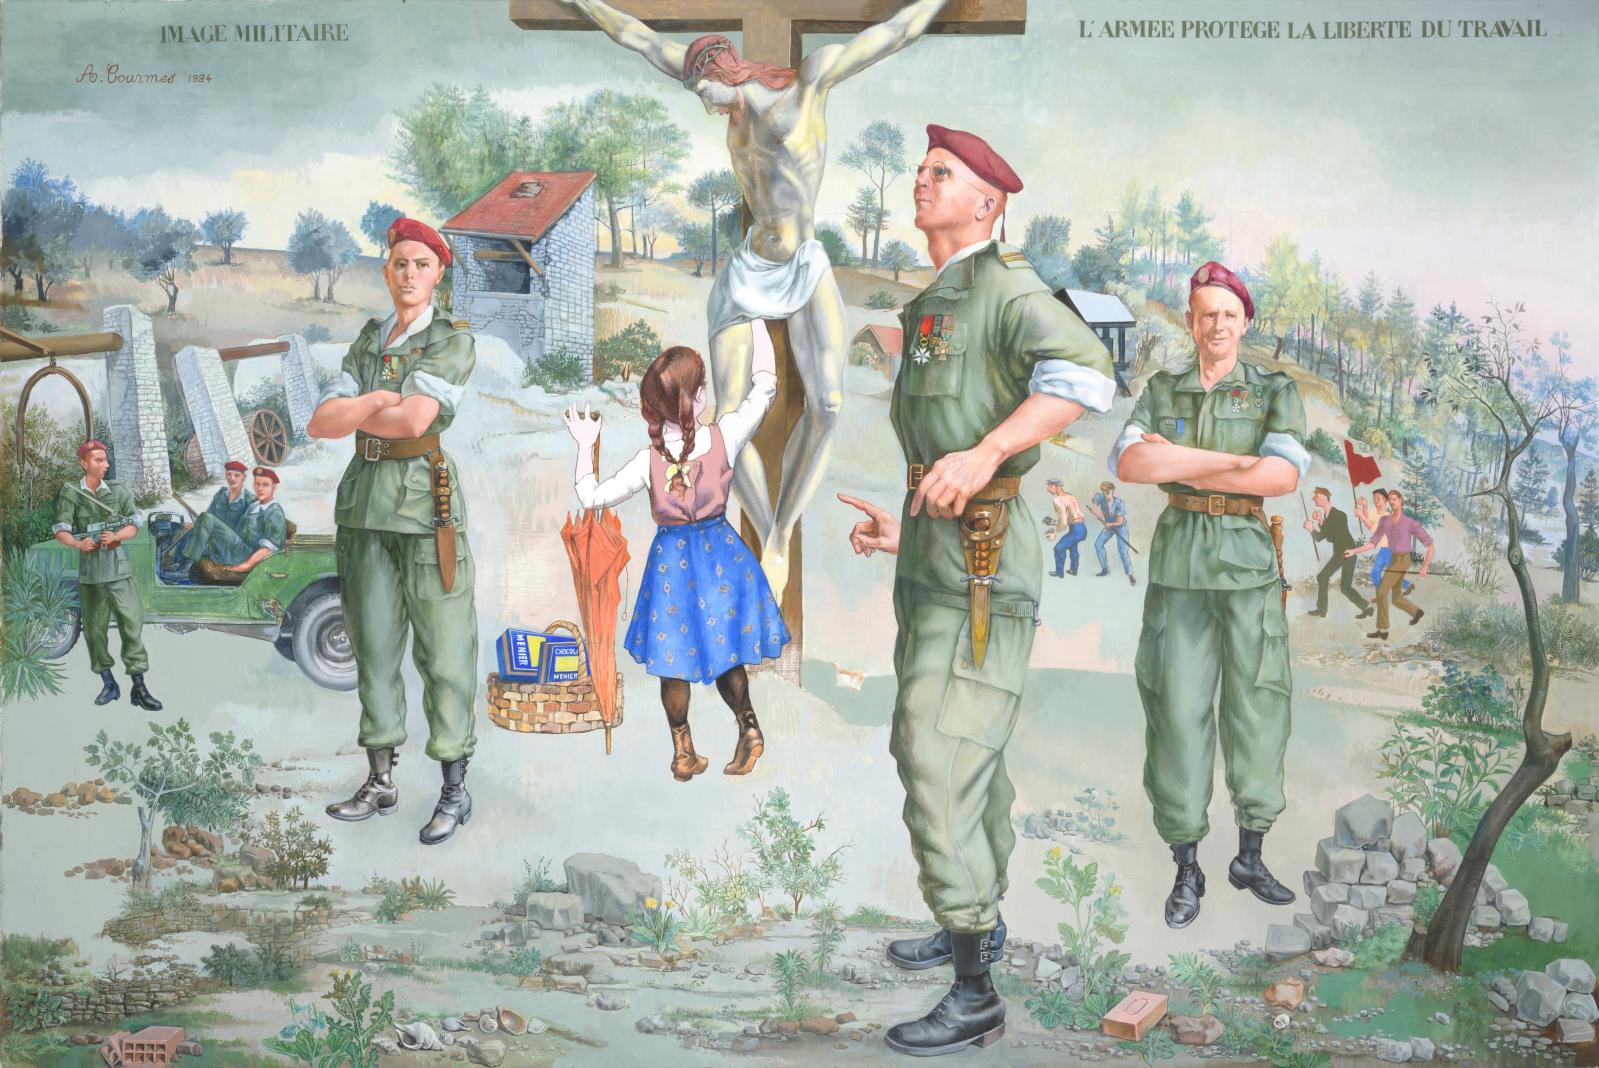 Alfred Courmes (1898-1993), Image militaire, l’armée protège la liberté du travail, 1984, huile sur toile signée, datée et titrée, 130 x 195 cm. Estim